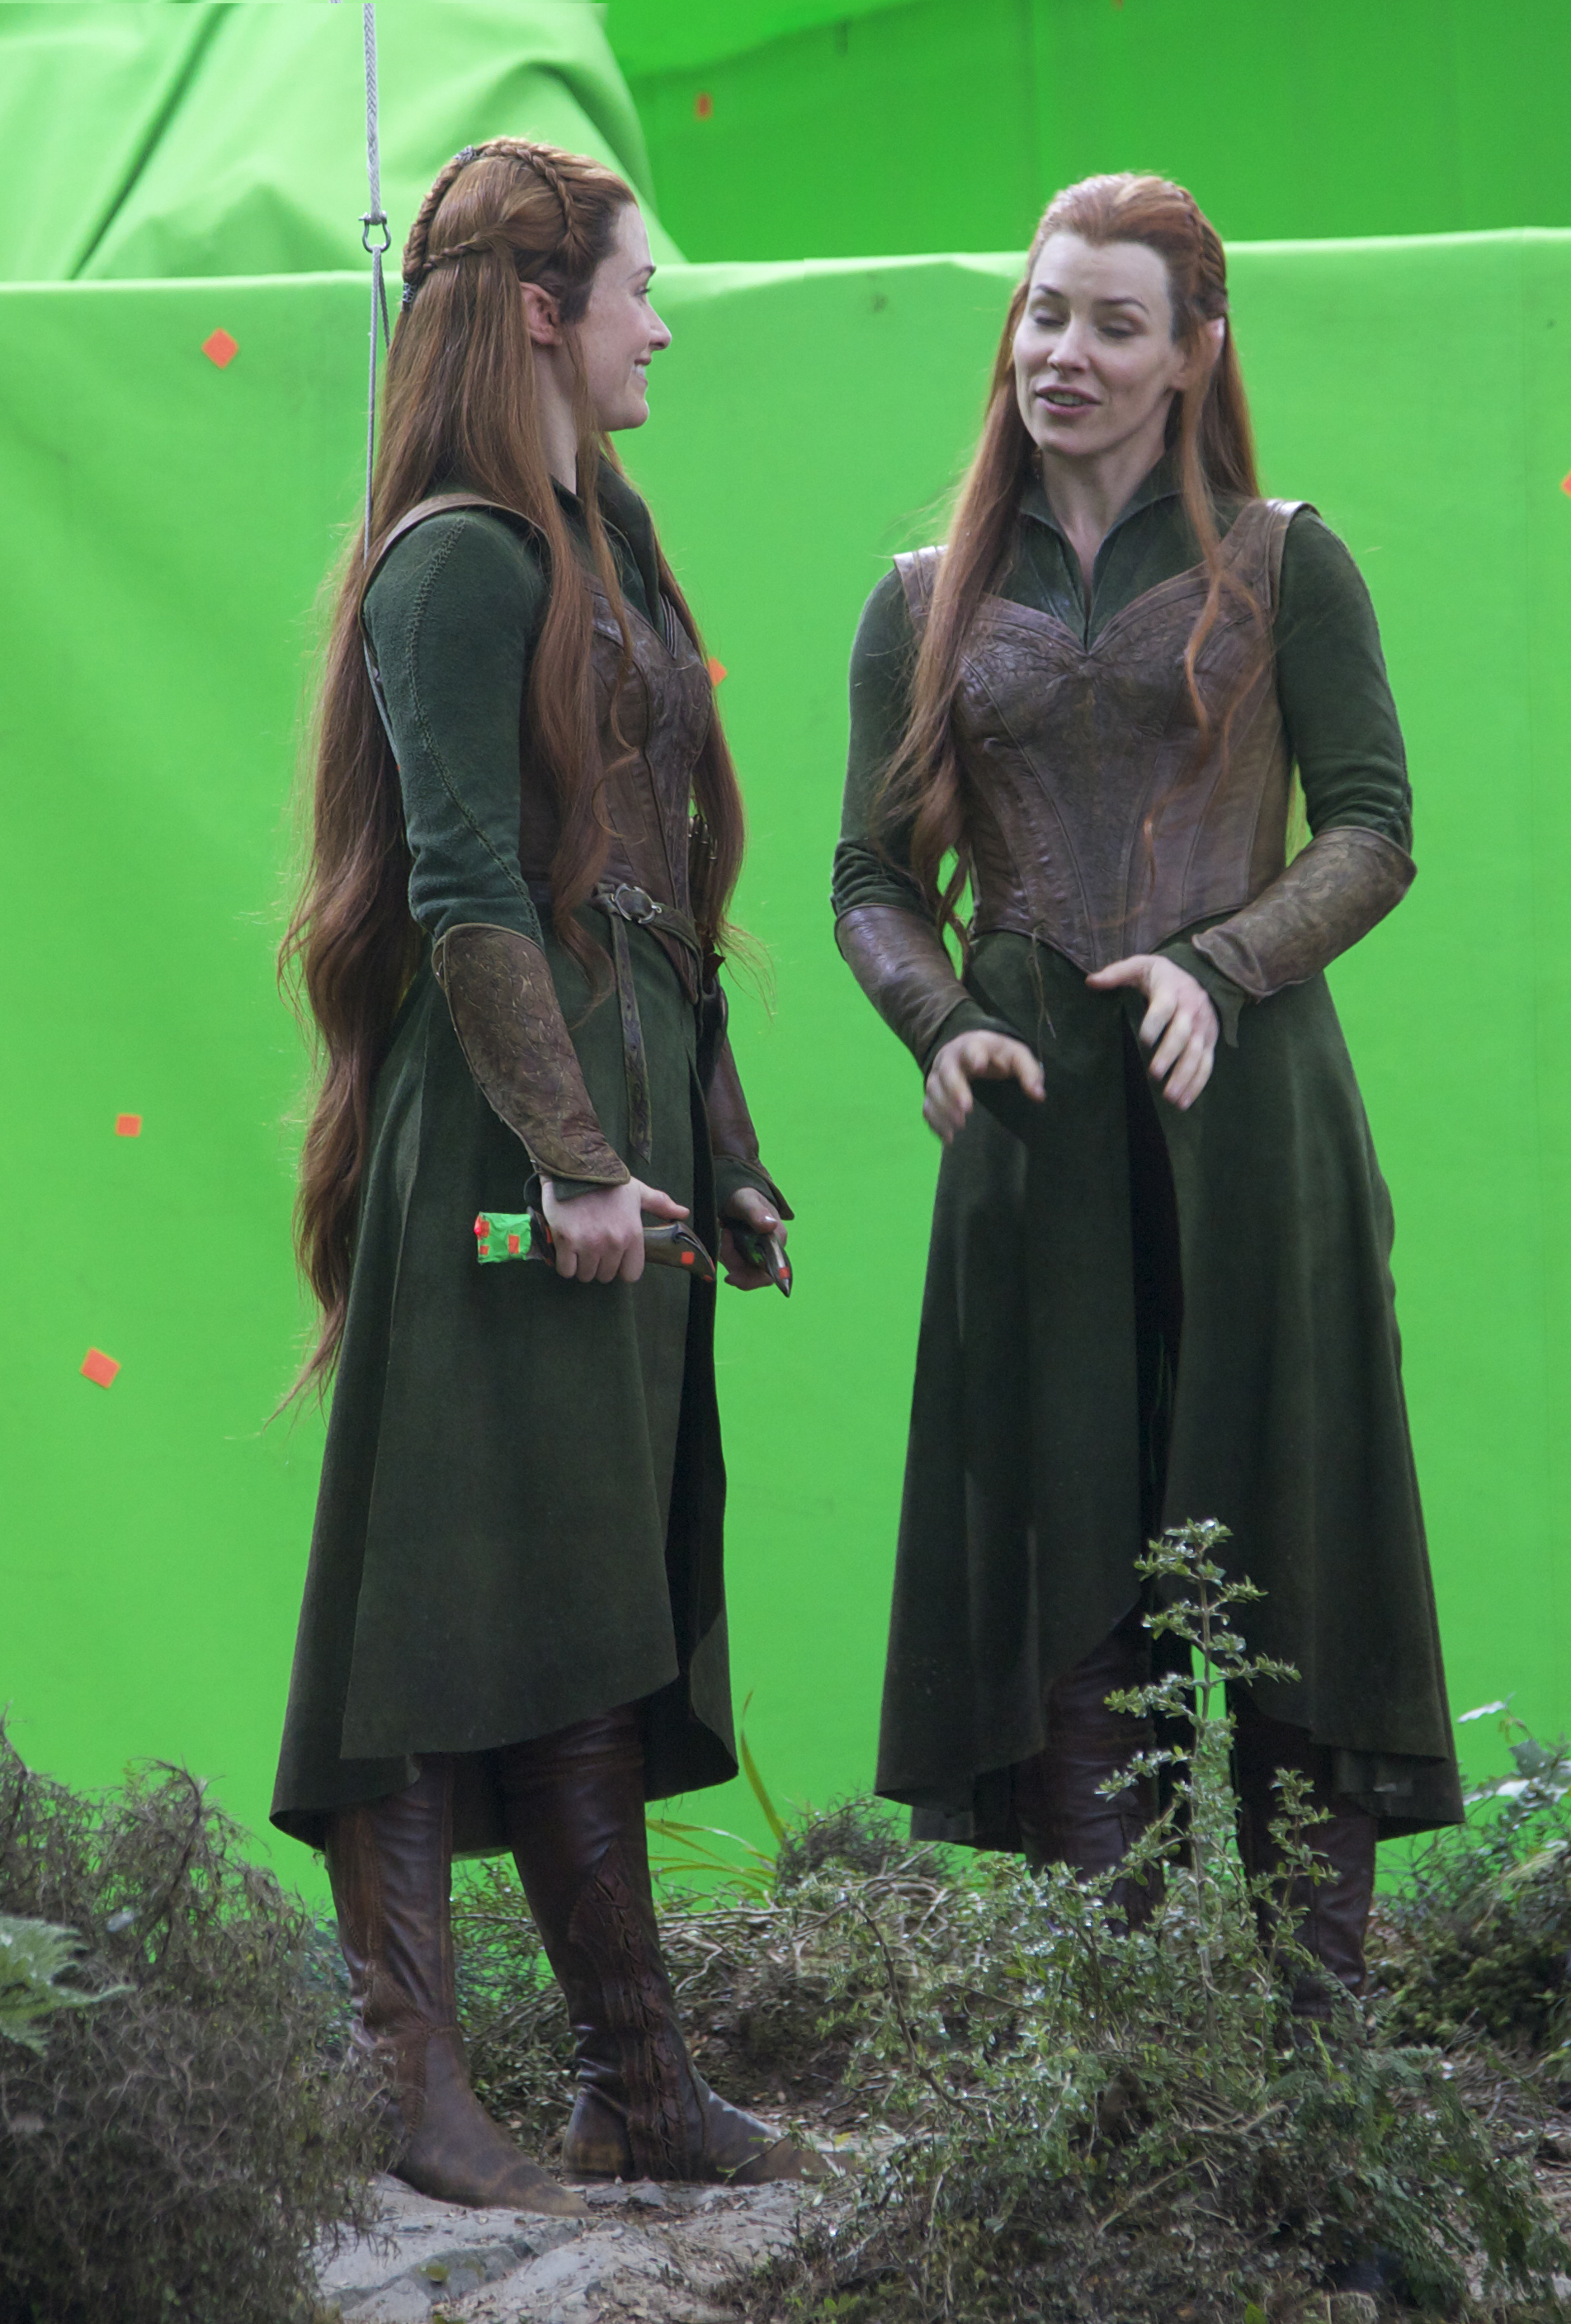 Ingrid Kleinig & Evangeline Lilly on The Hobbit Trilogy